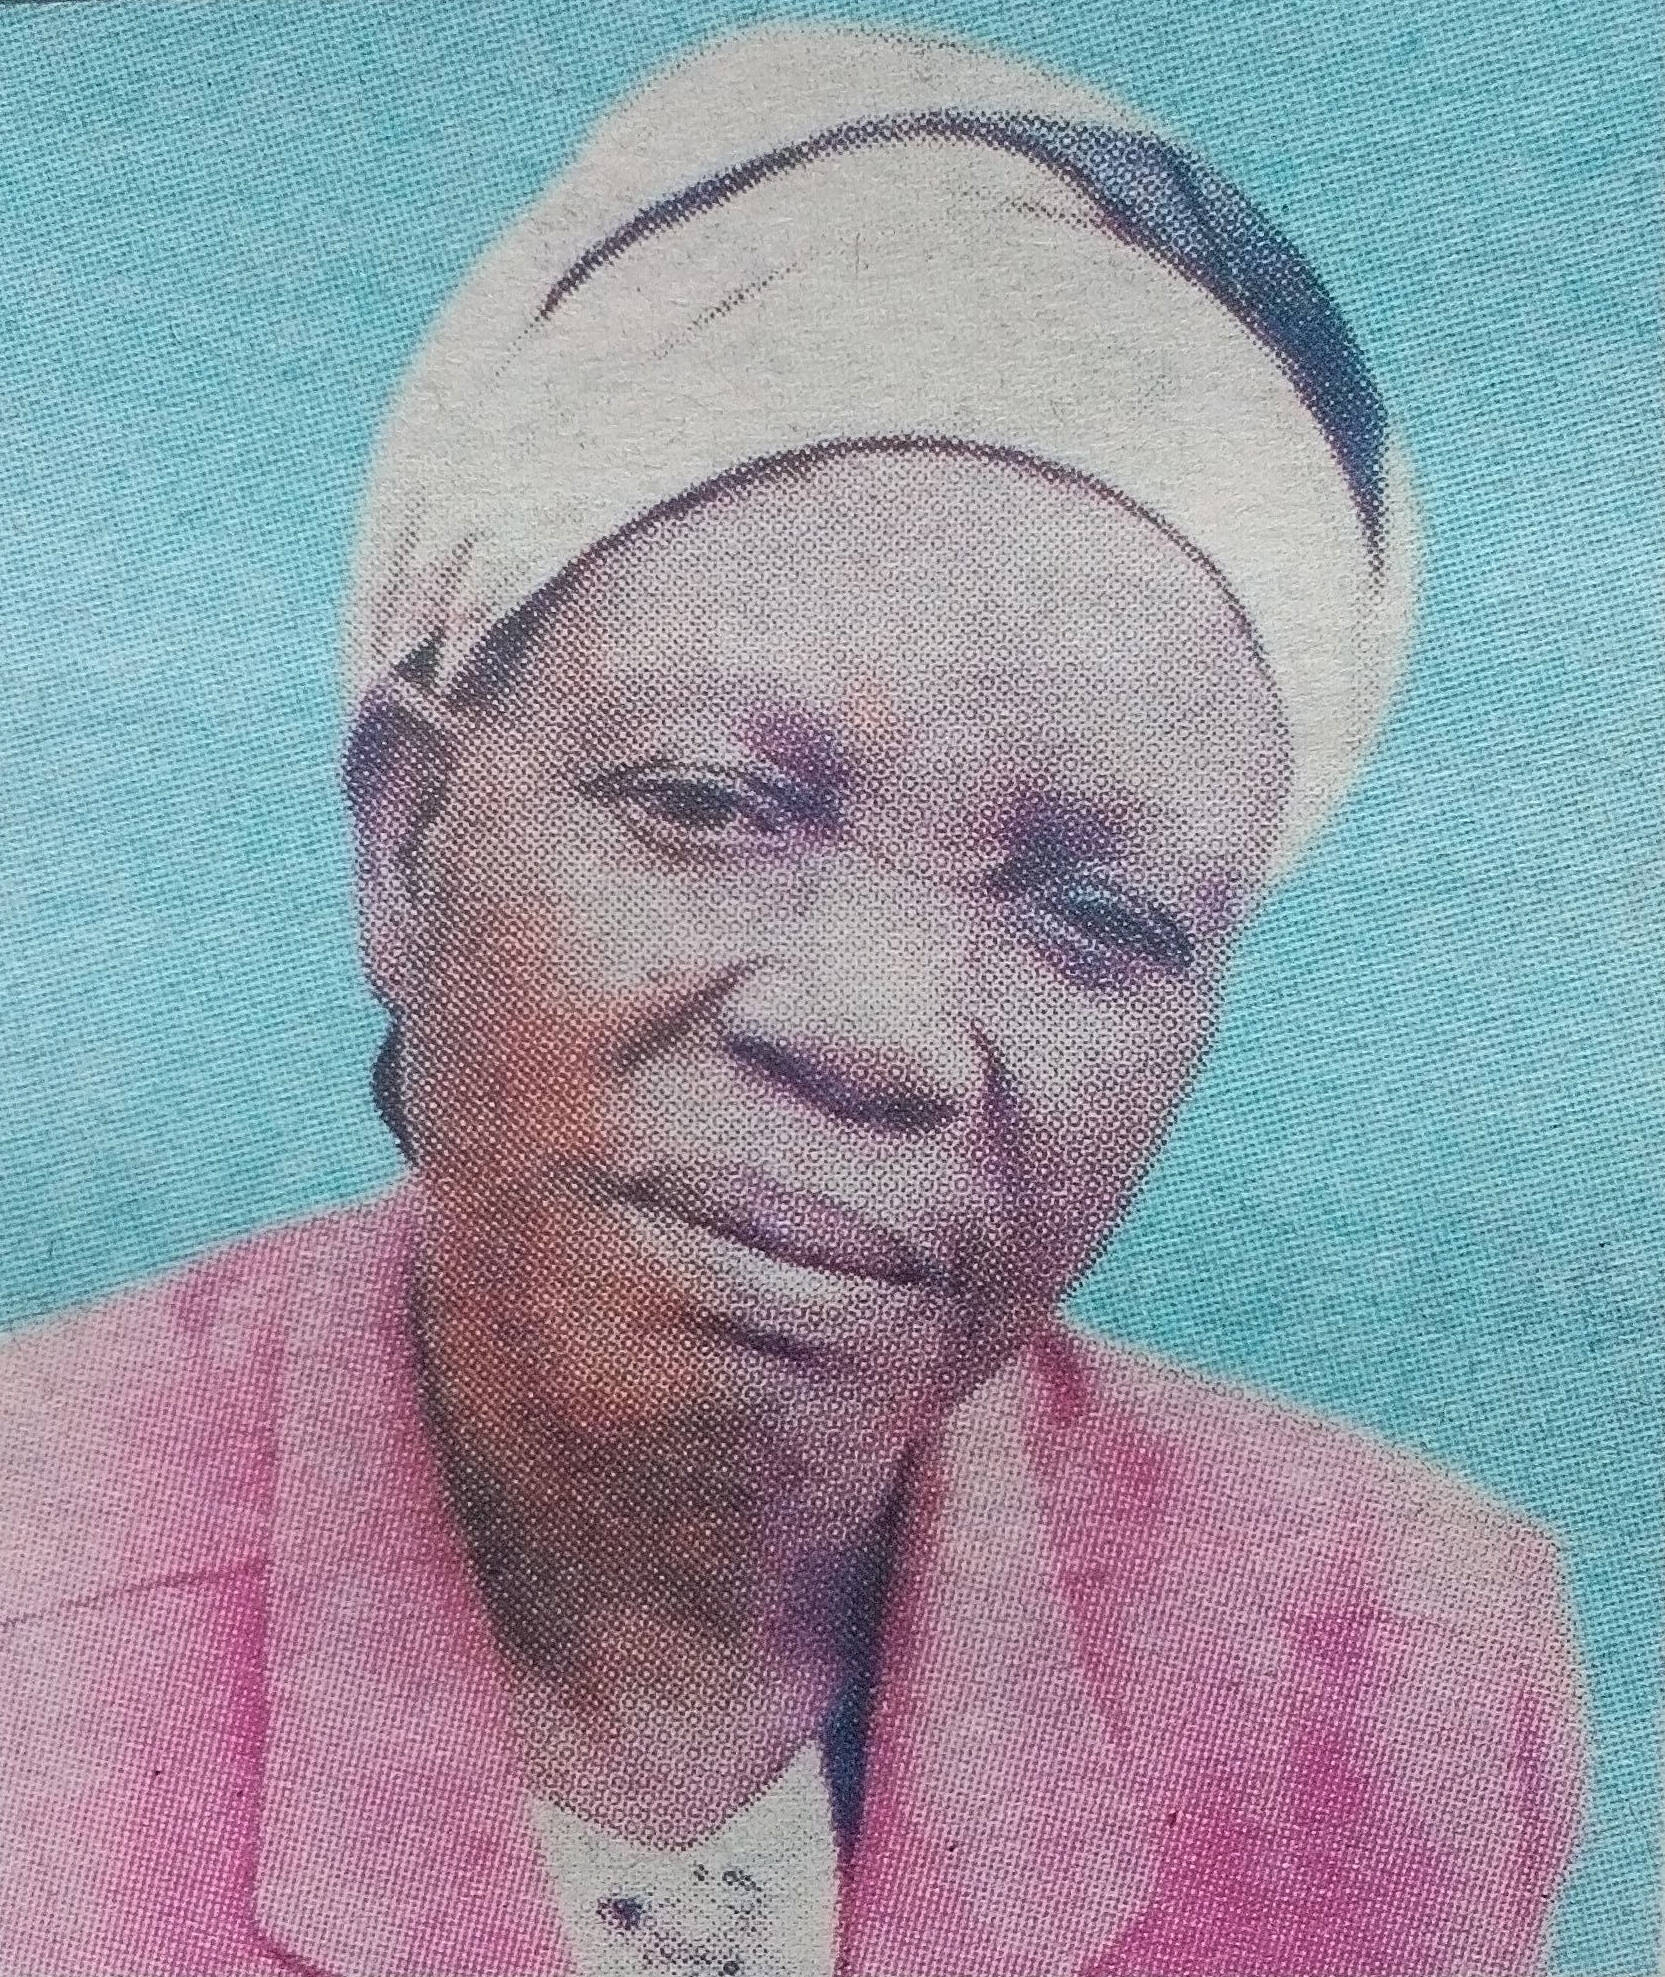 Obituary Image of Deaconess Adhiambo Owino